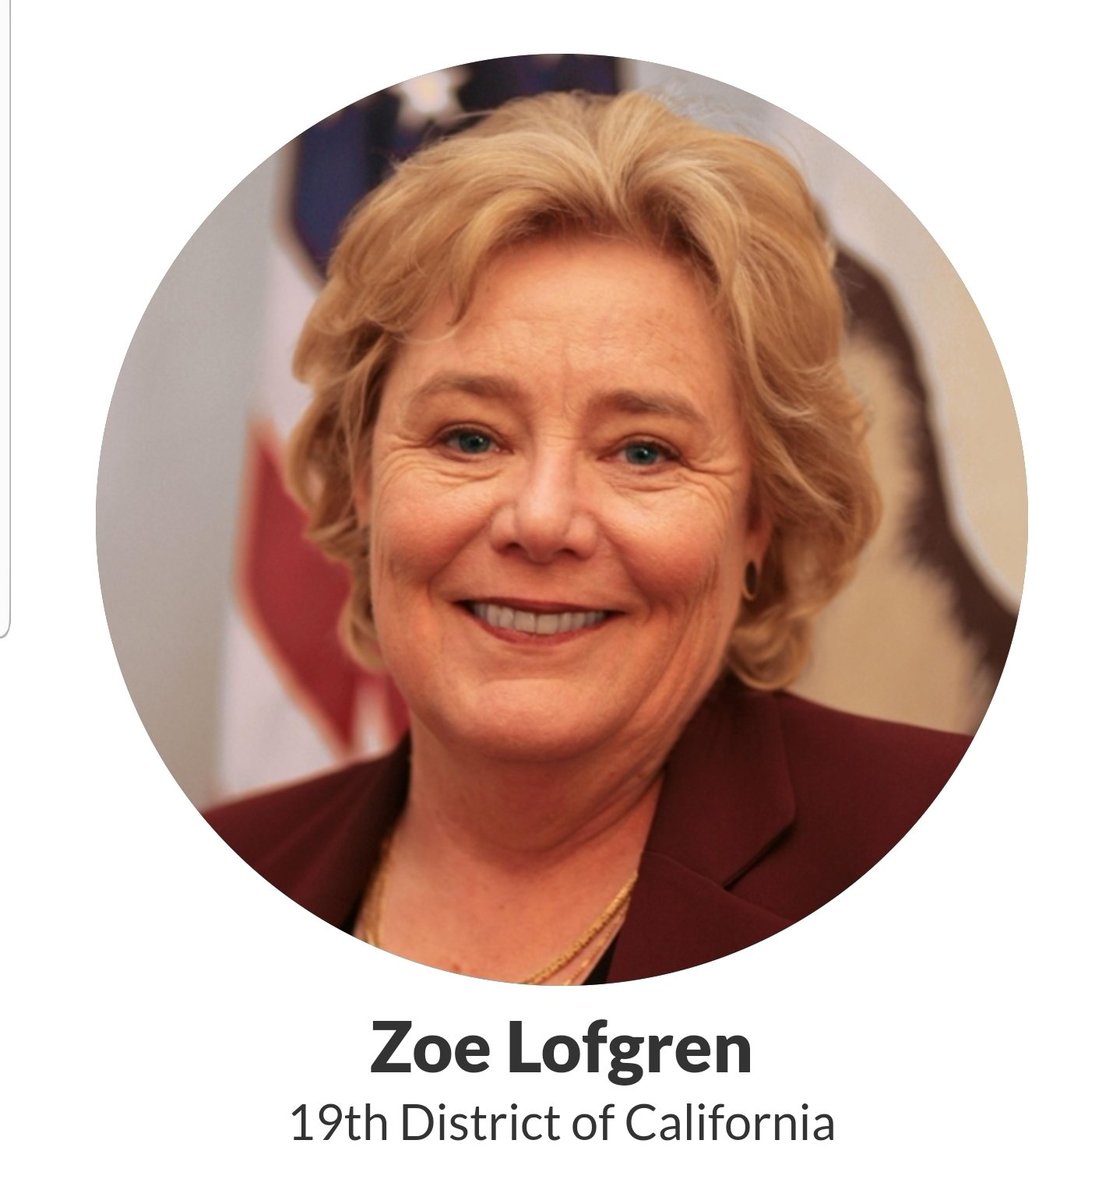 Zoe Lofgren, California's 19th District https://lofgren.house.gov/ 8/98